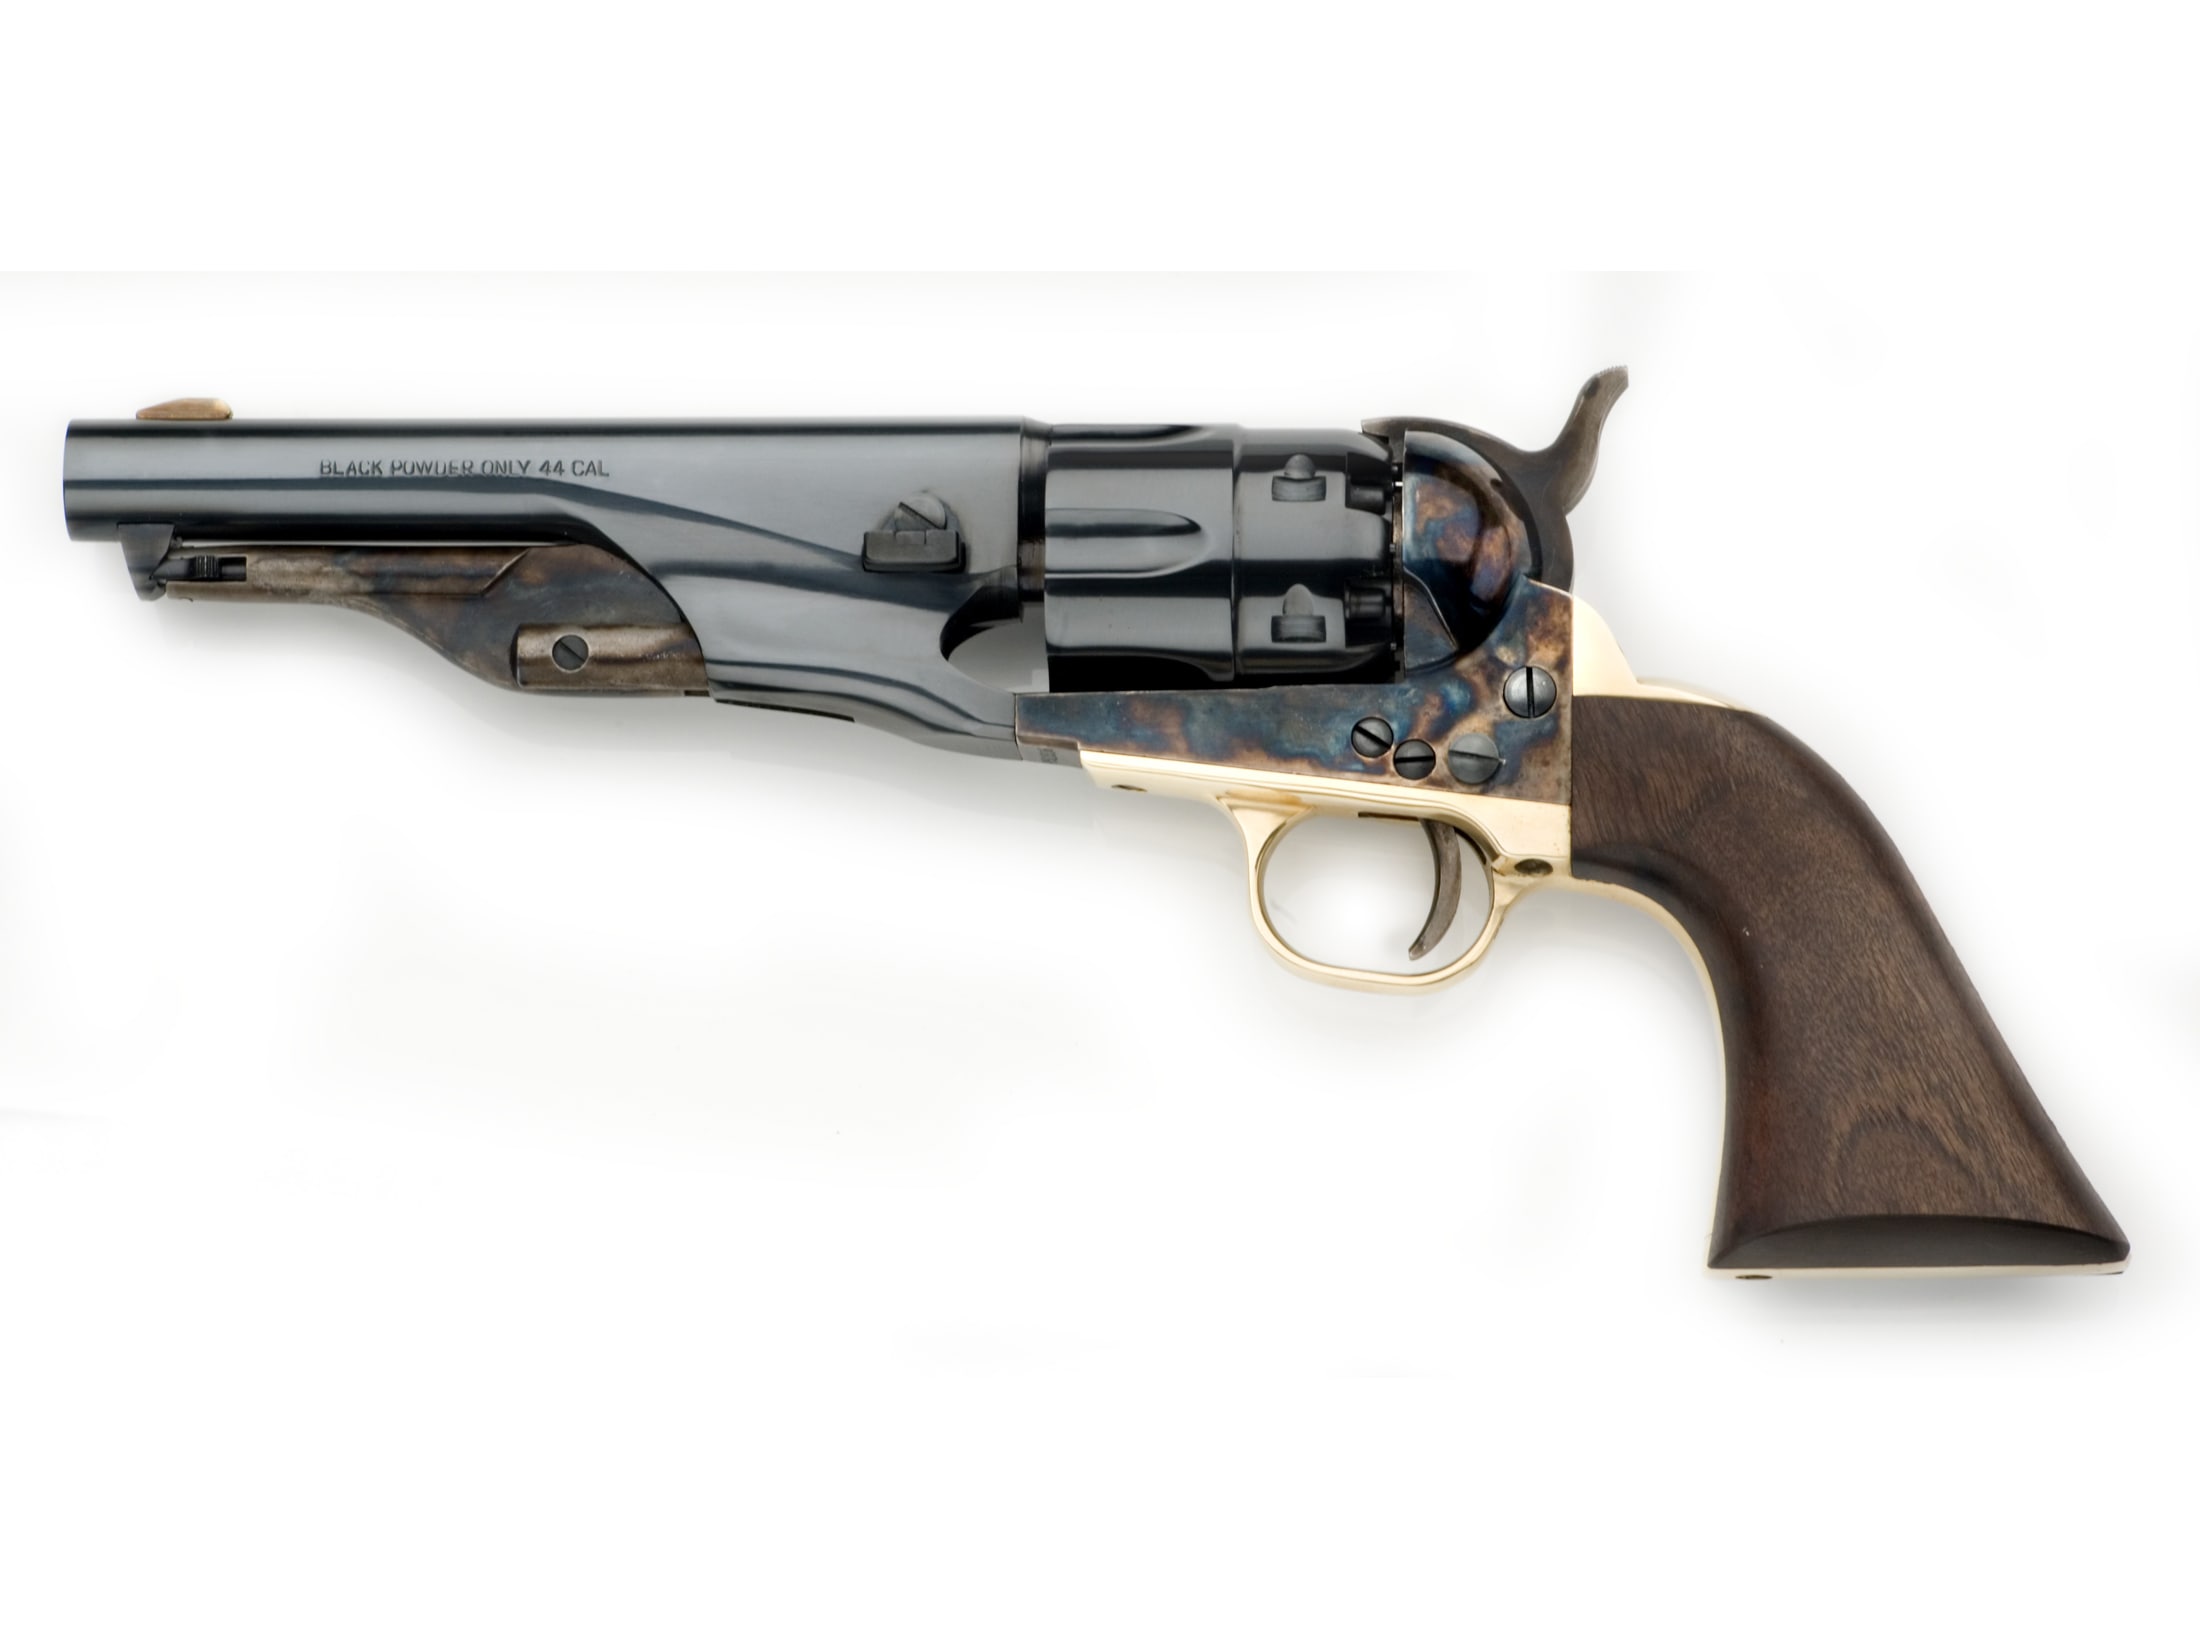 Révolver poudre noire Pietta 1860 Colt Army Sheriff acier ca